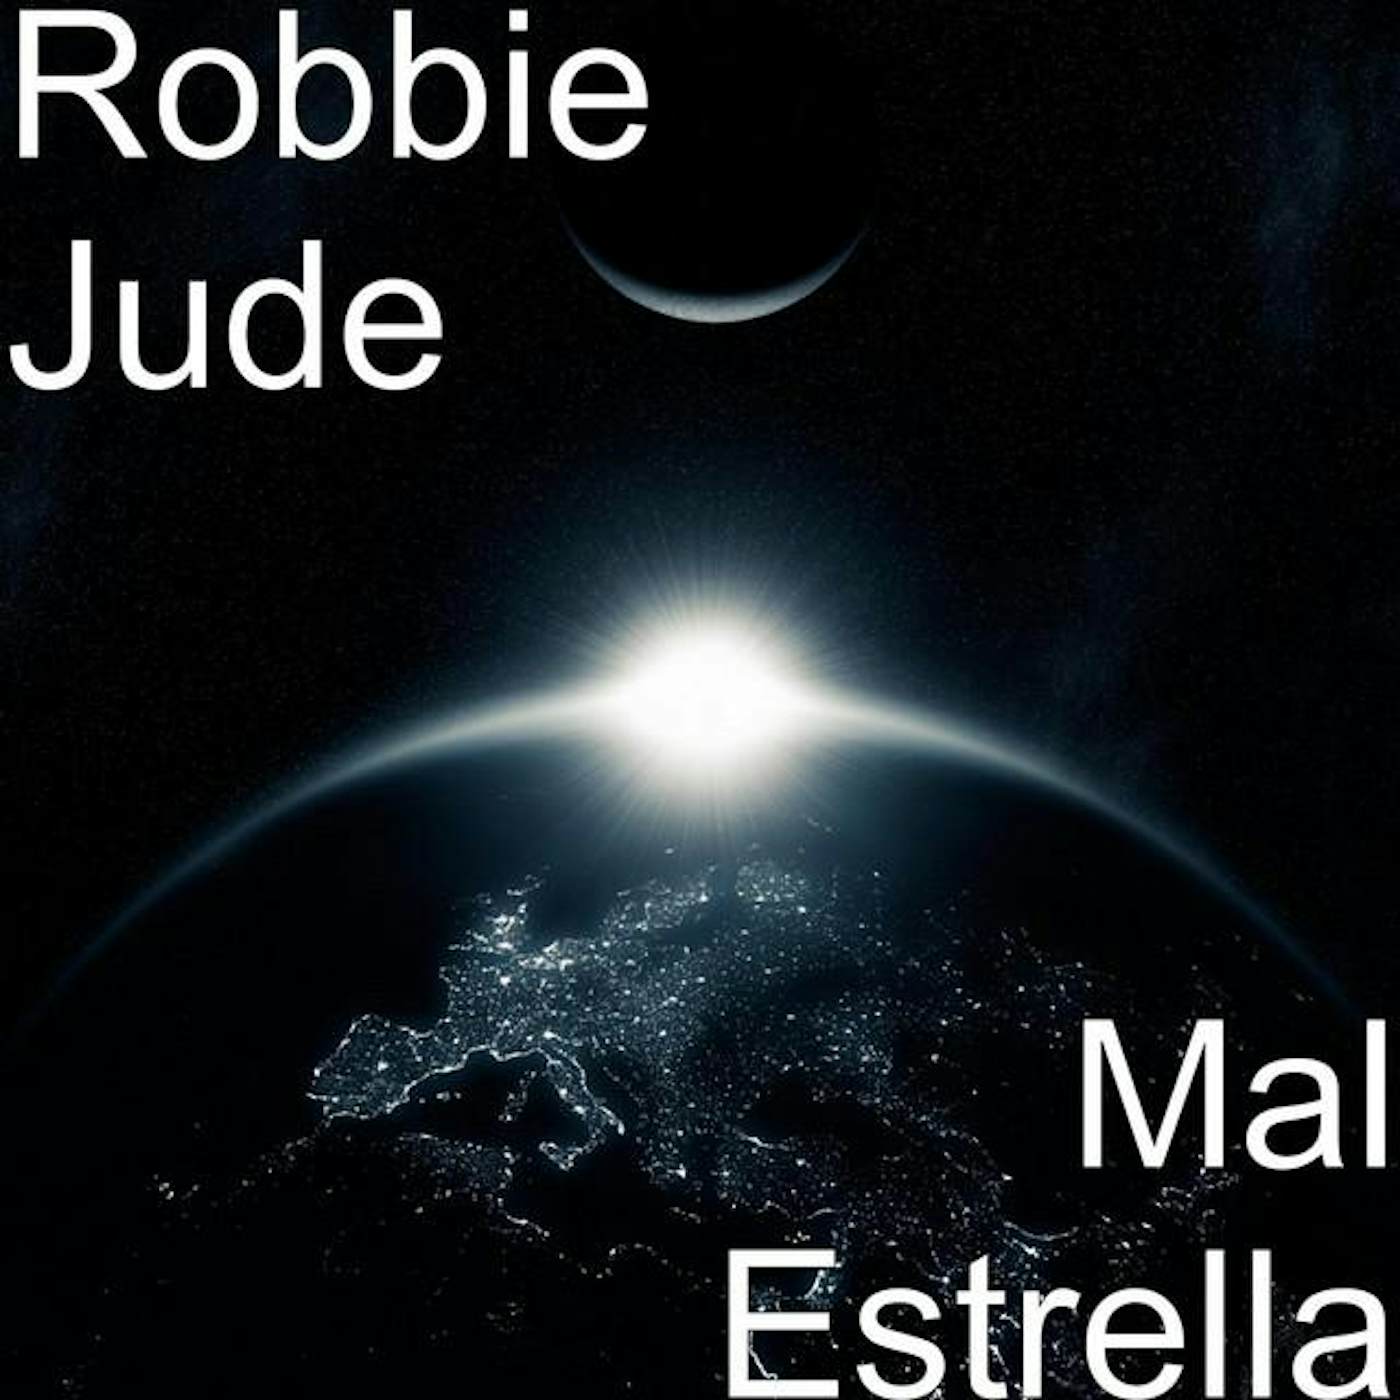 Robbie Jude